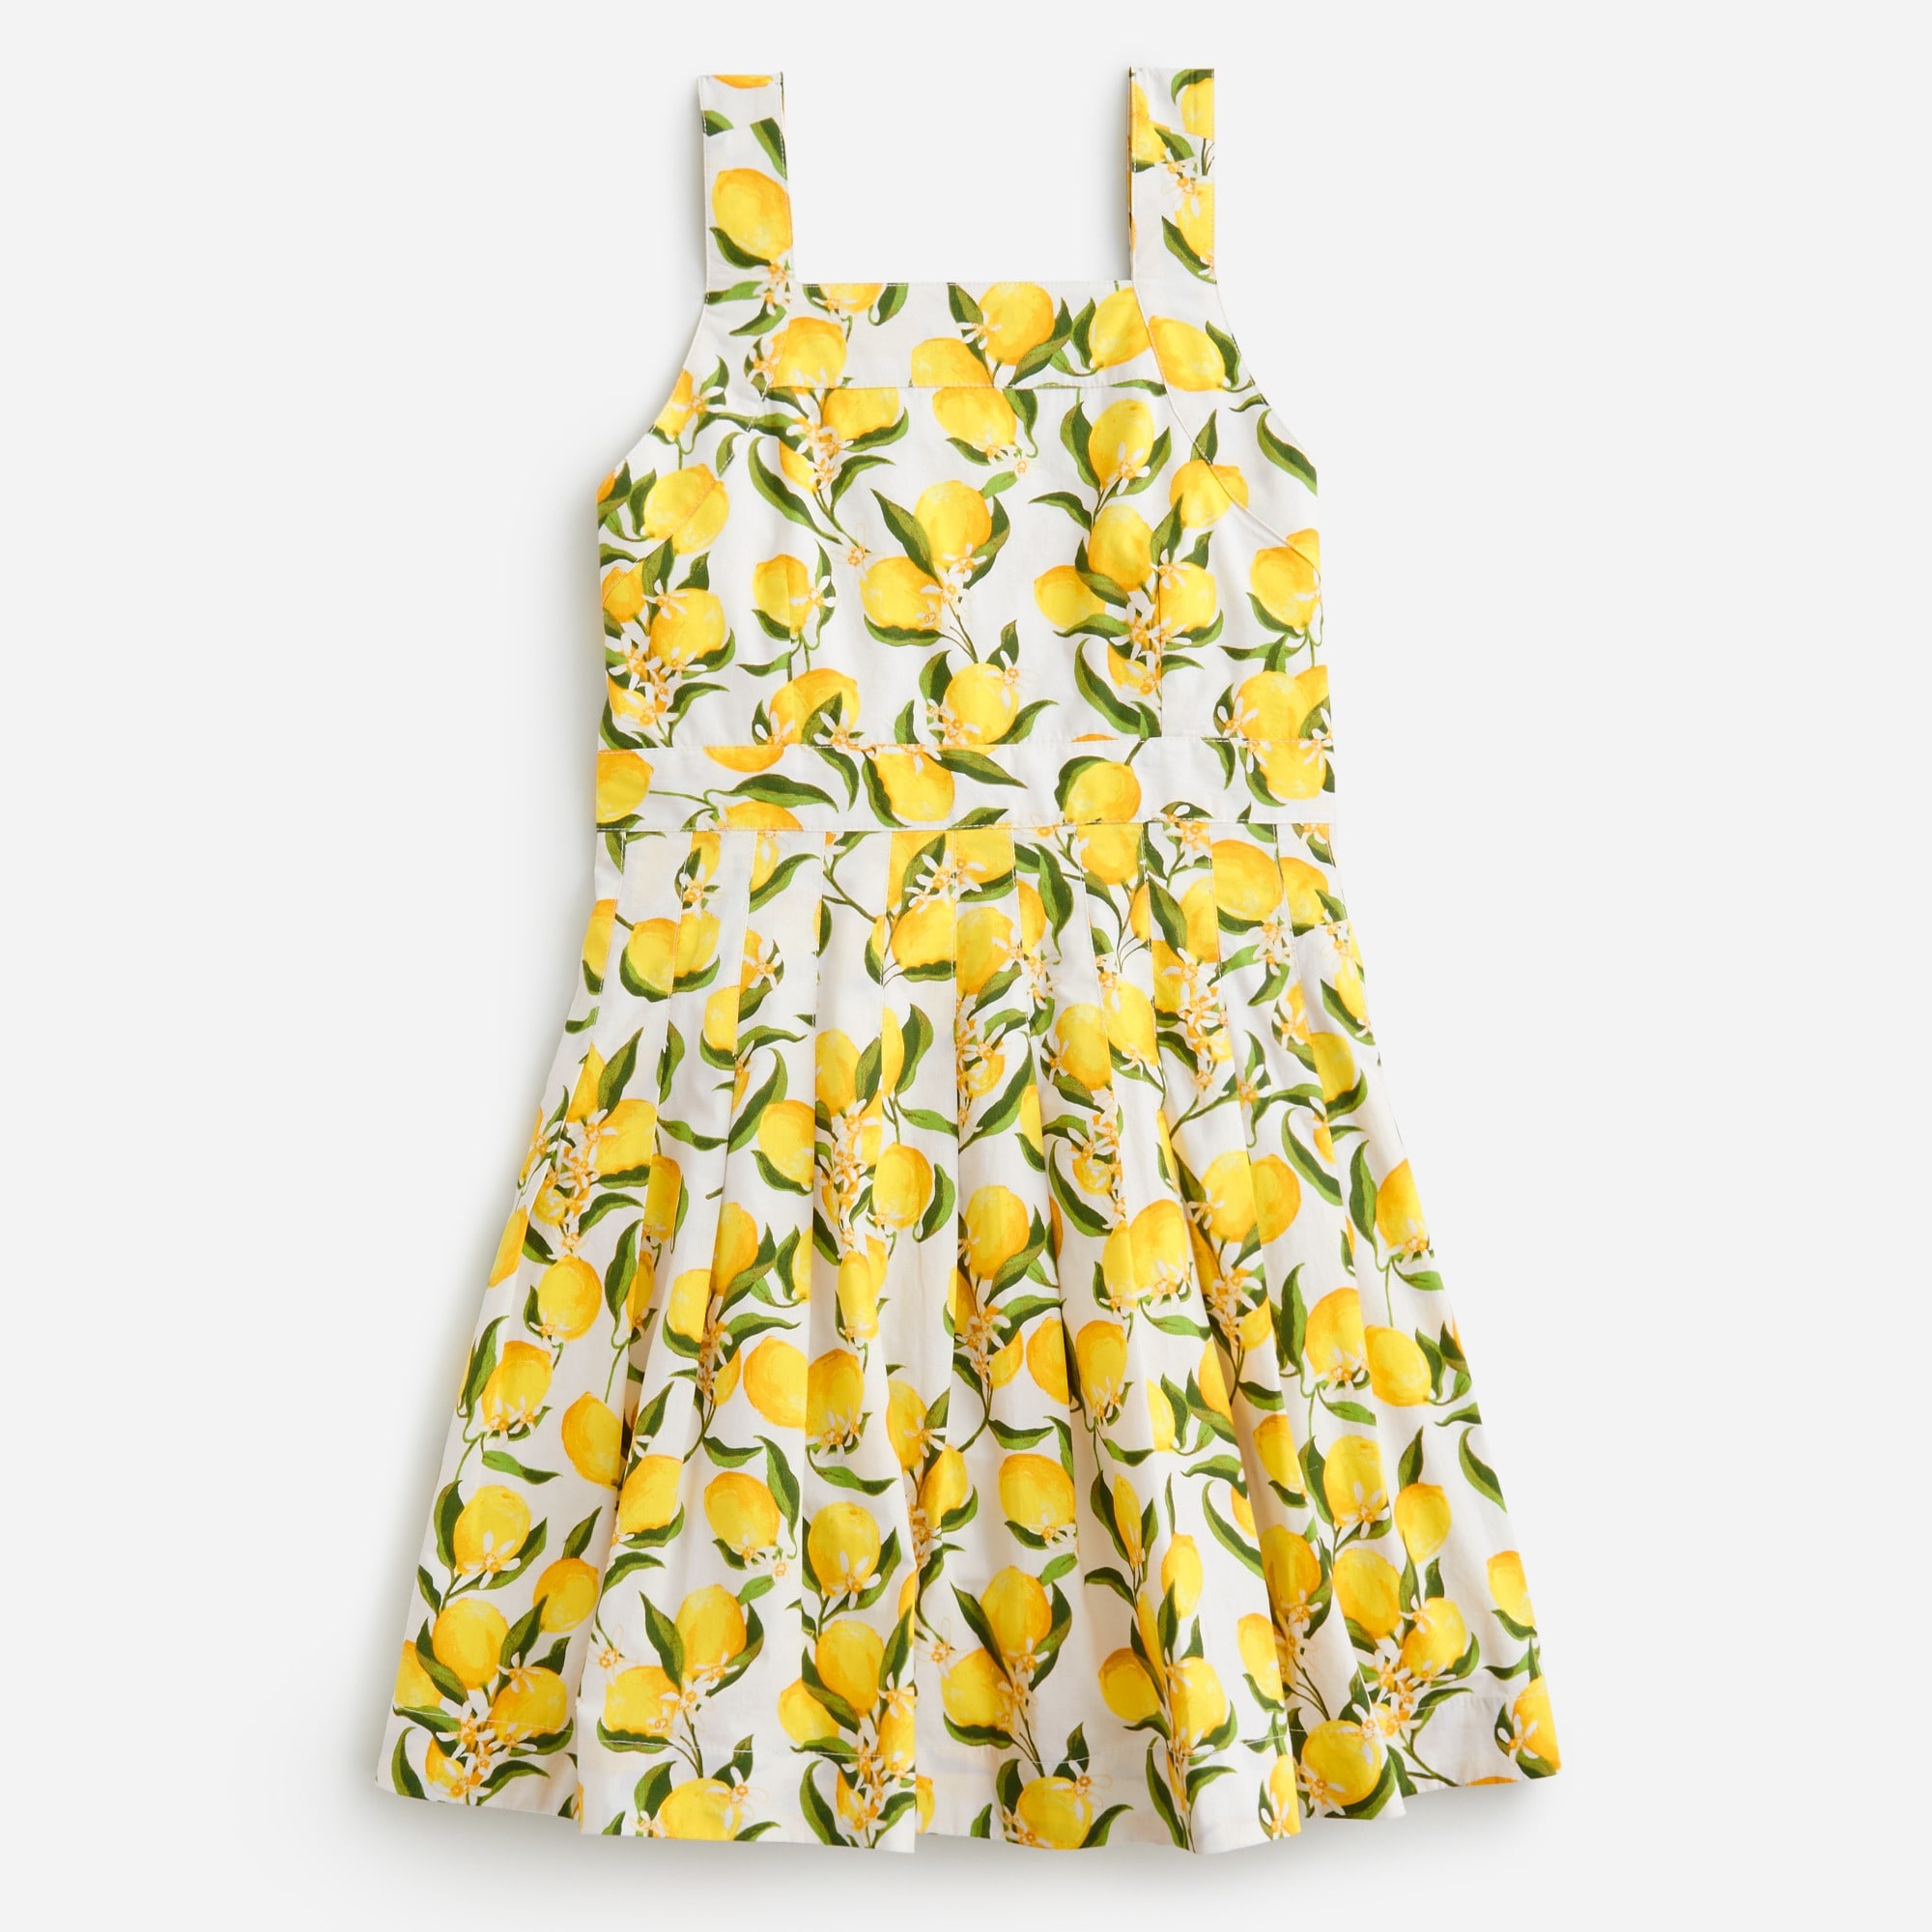  Girls' apron dress in lemonade print